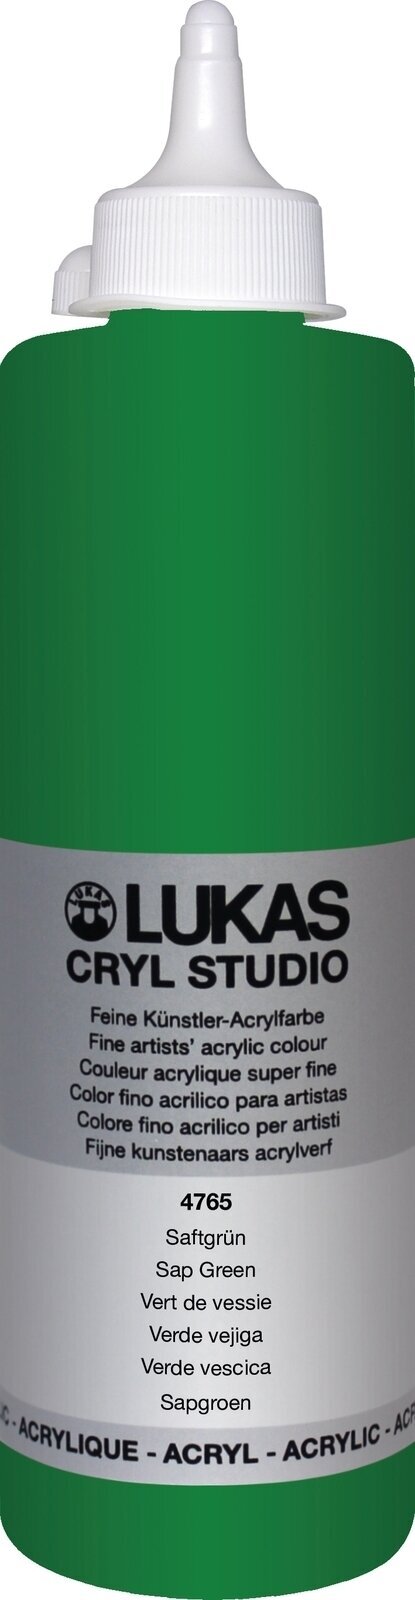 Akrylová barva Lukas Cryl Studio Akrylová barva 500 ml Sap Green